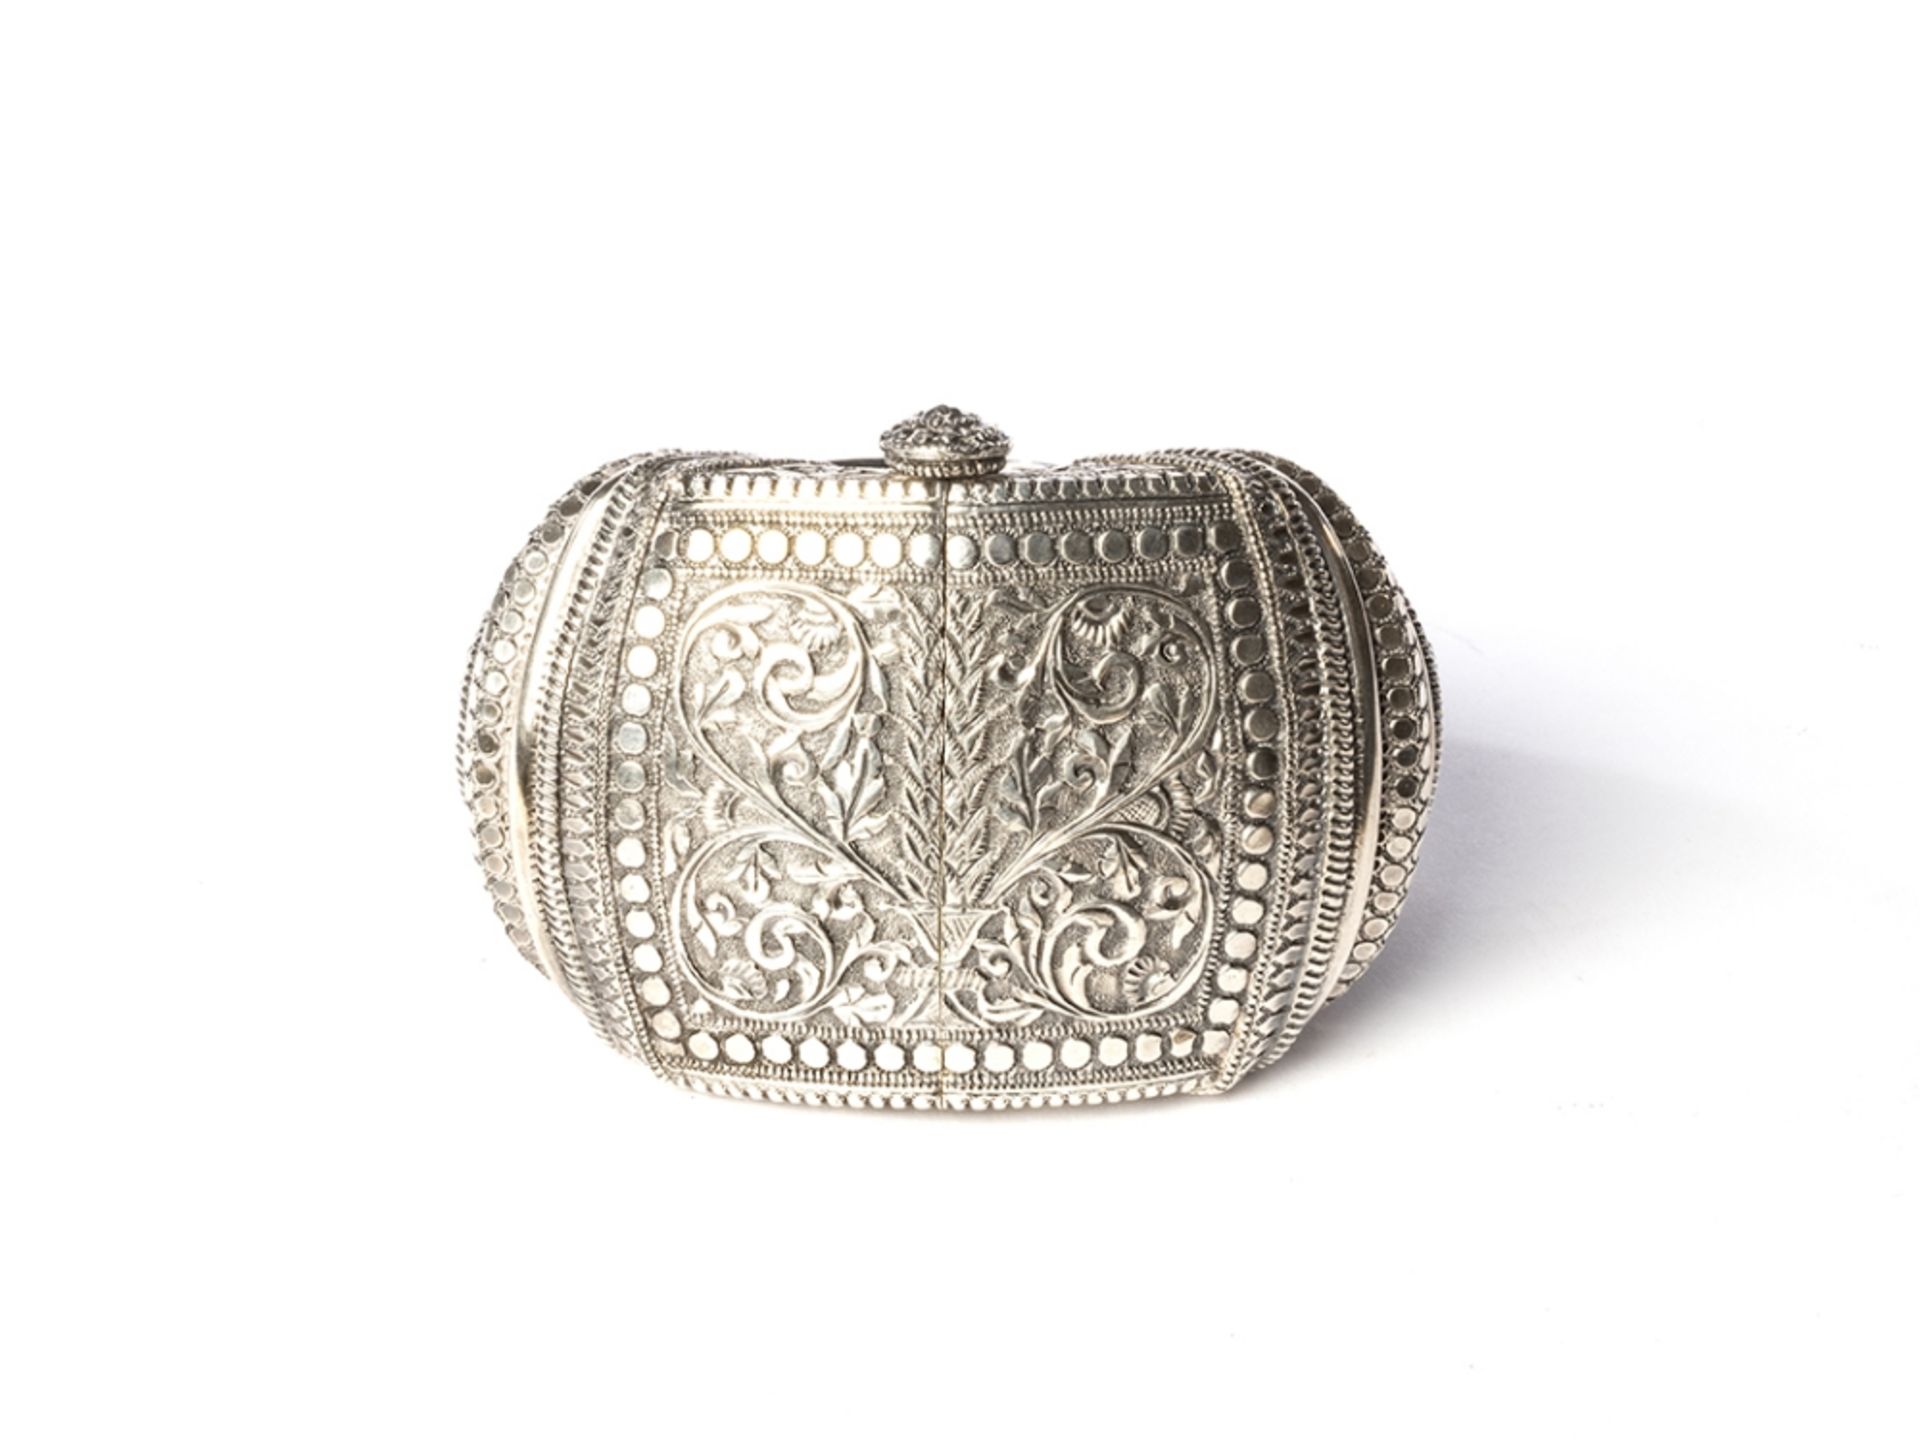 Magnifique bracelet de chevilleInde, probablement Gujarat, XIXe siècleEn argent gravé et ciselé